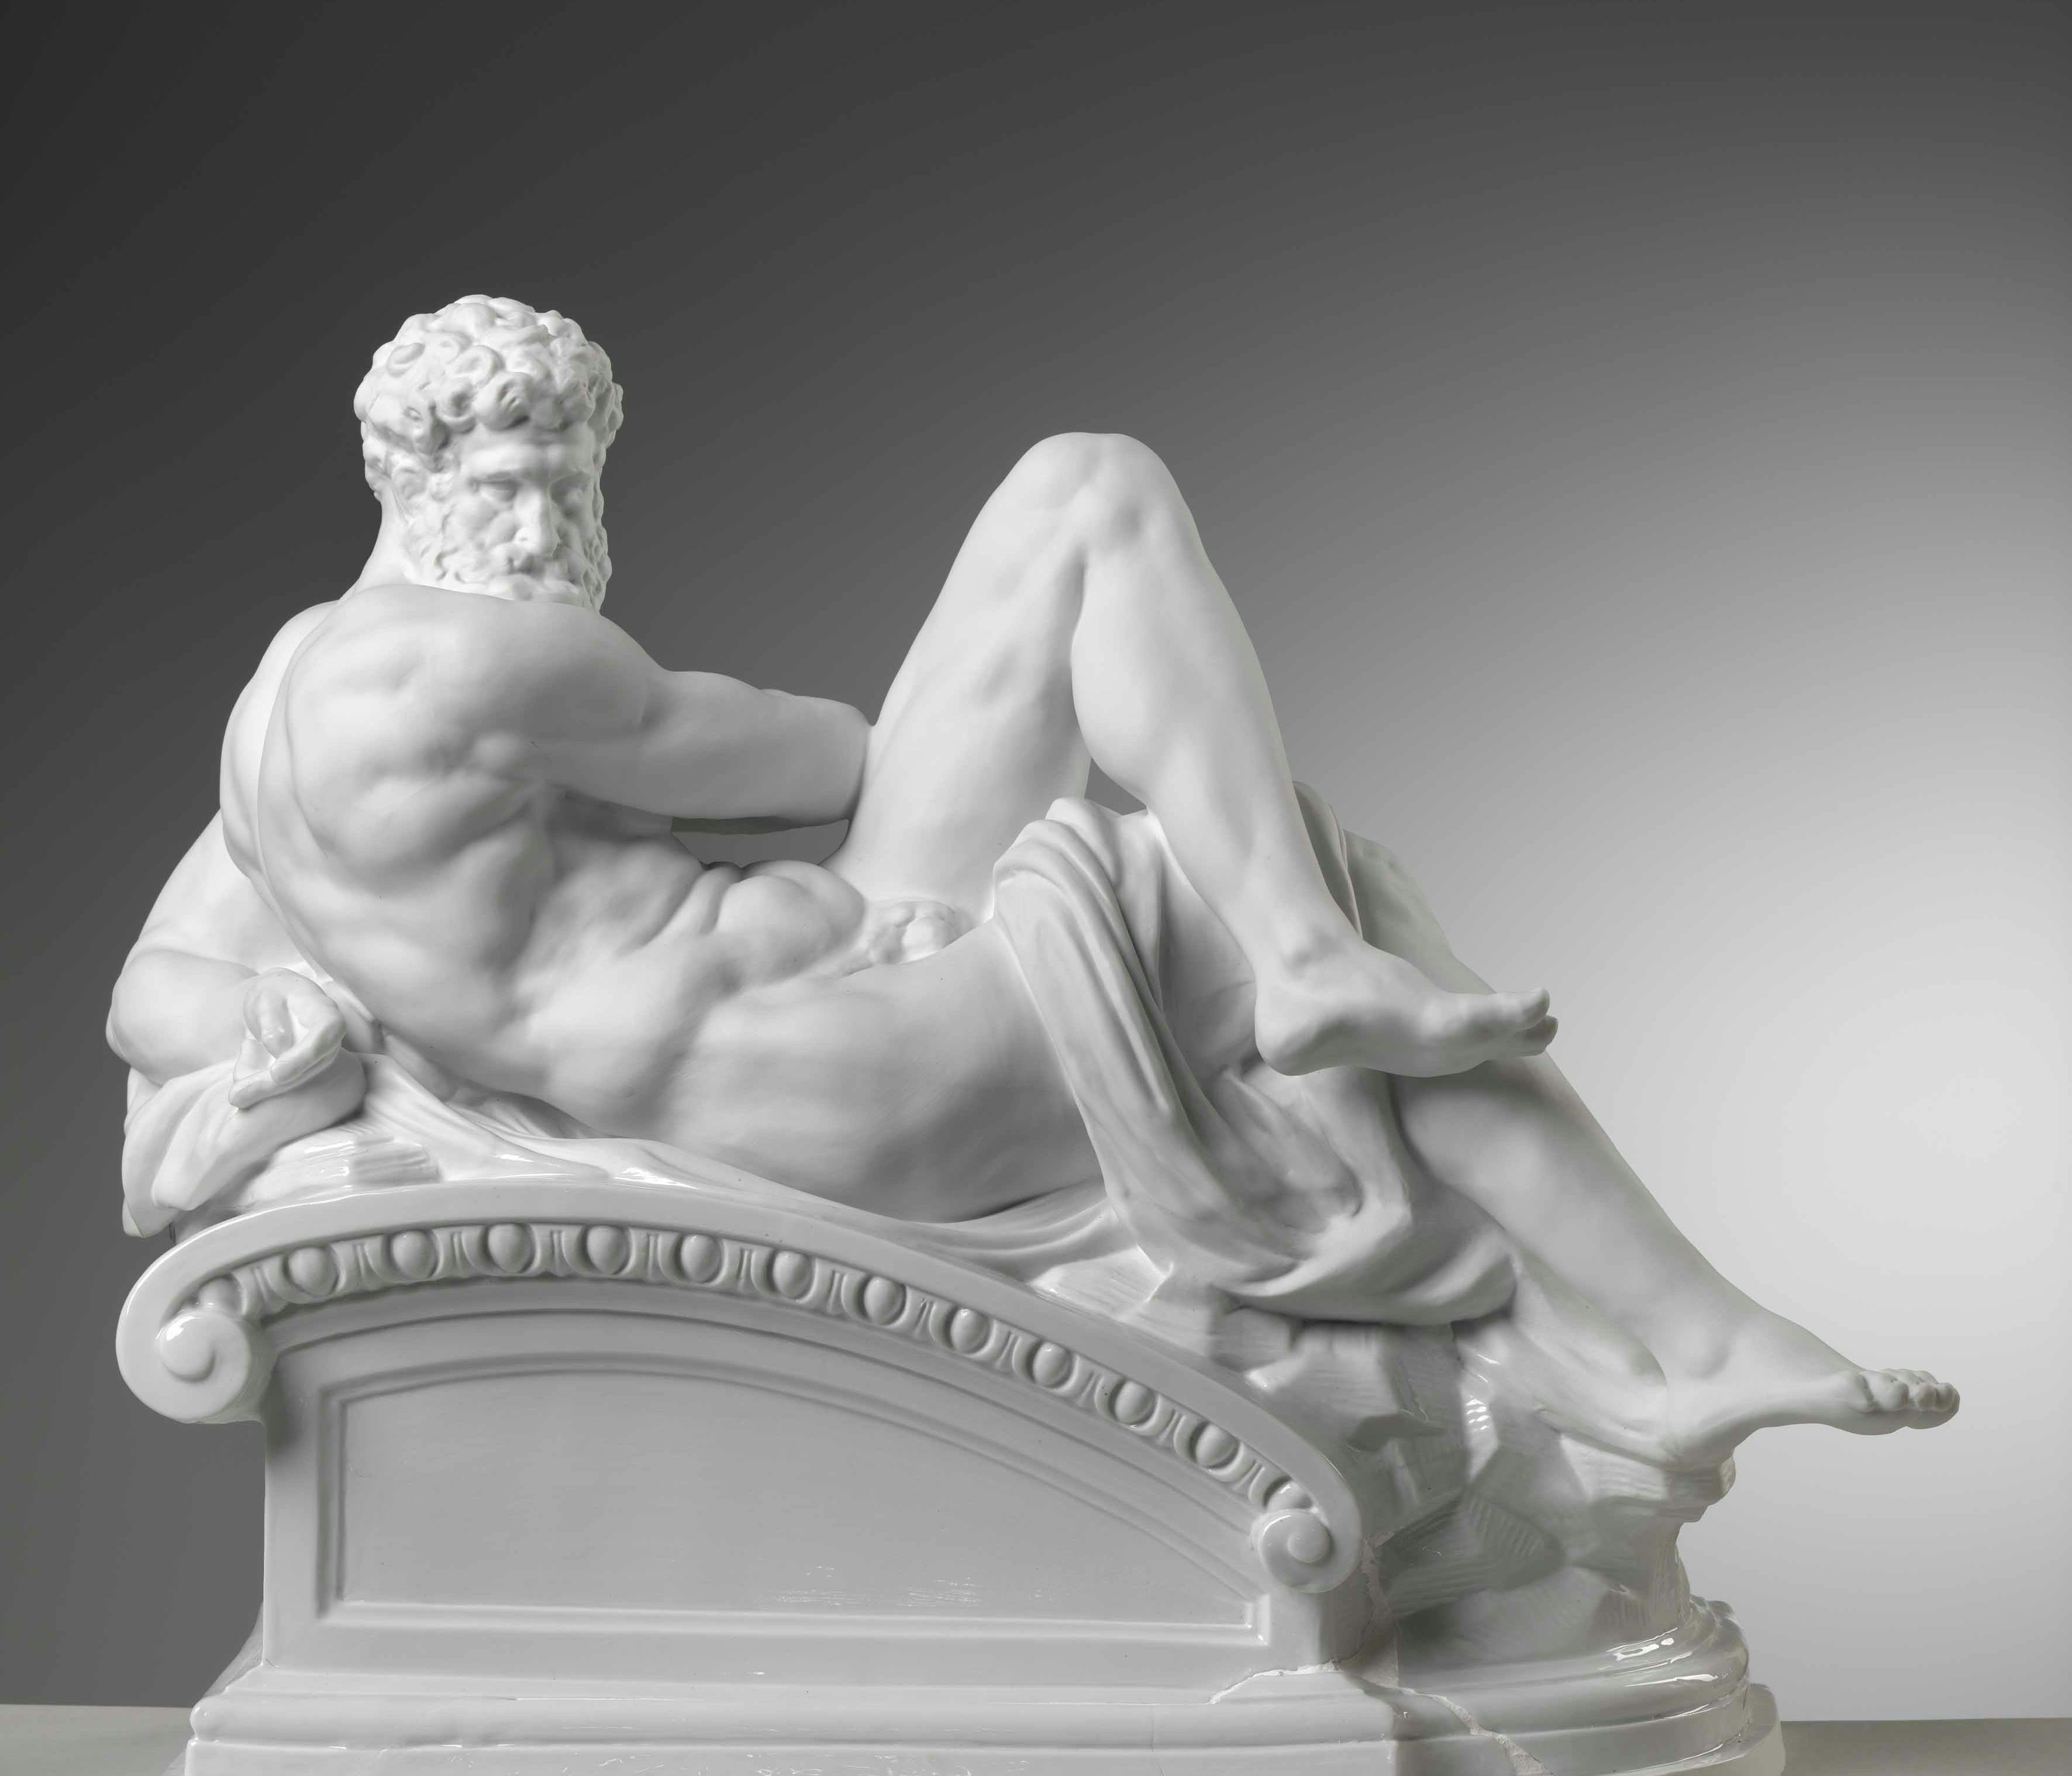 Scultura bianca raffigurante un uomo muscoloso nudo